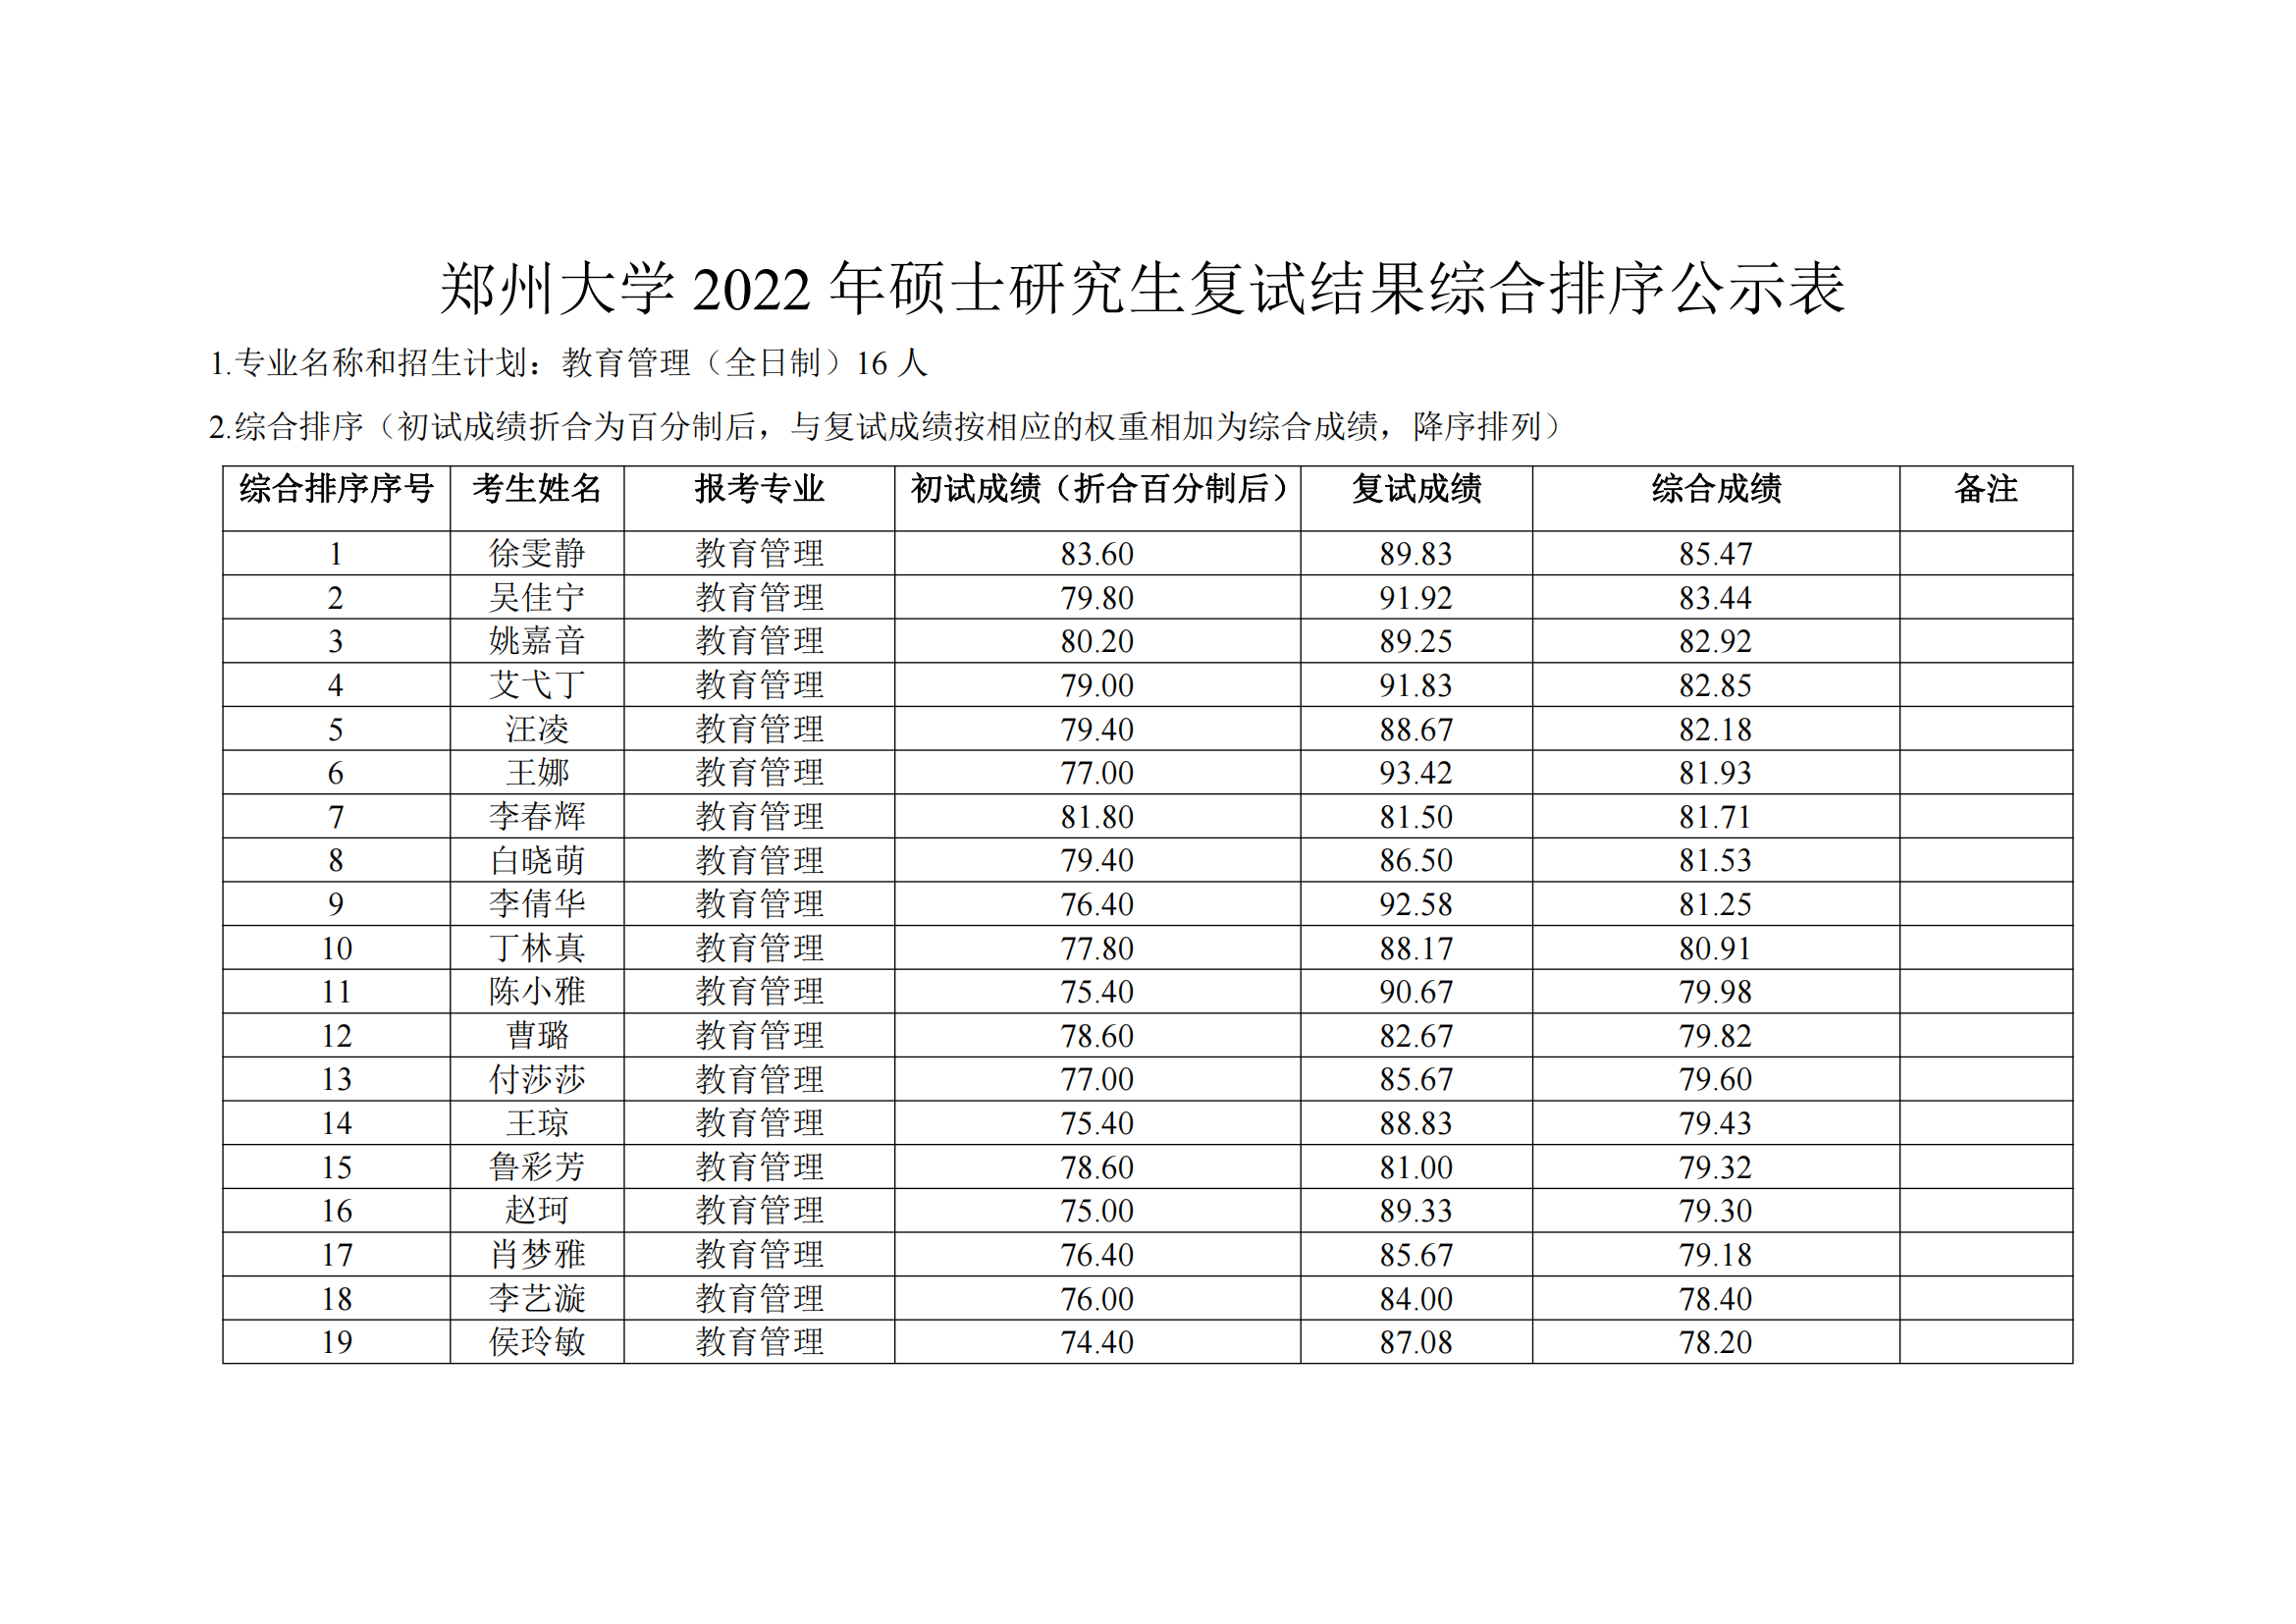 郑州大学教育学院2022年硕士研究生复试结果综合排序公示表_11.png